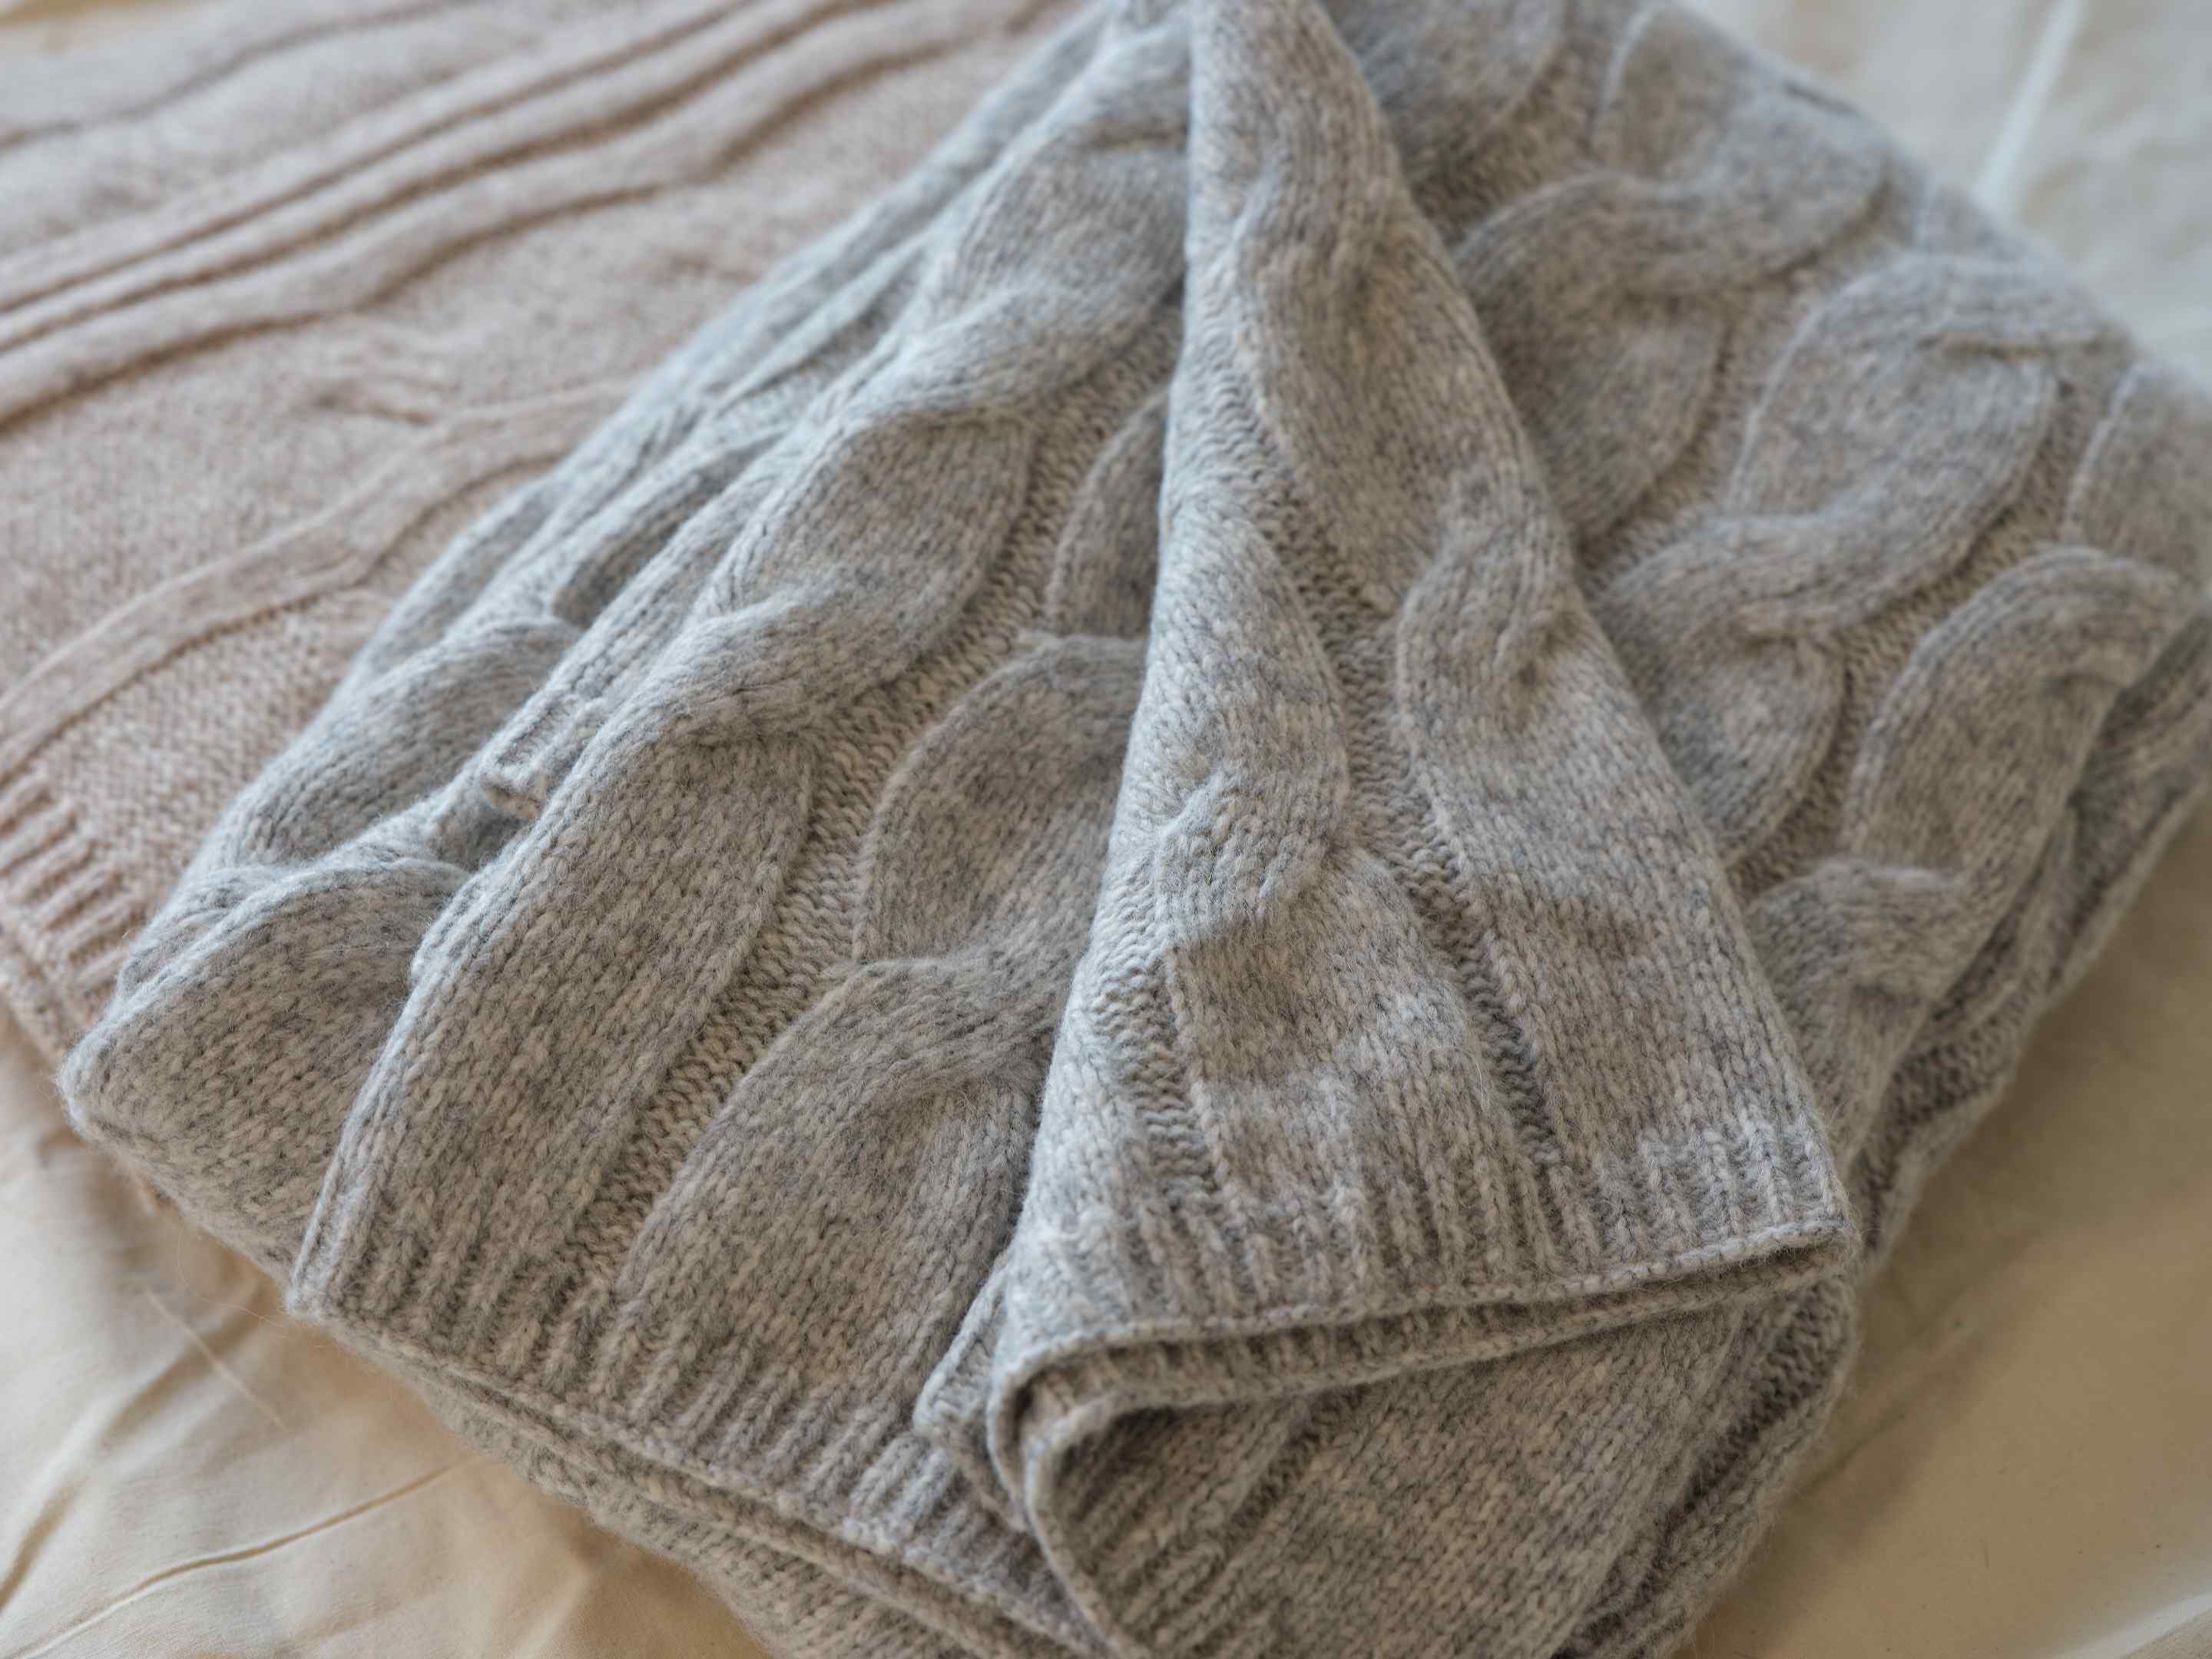 50x70 Alpaca and Wool Throw Blanket, Flannel Grey | Elie Tahari | JANE + MERCER